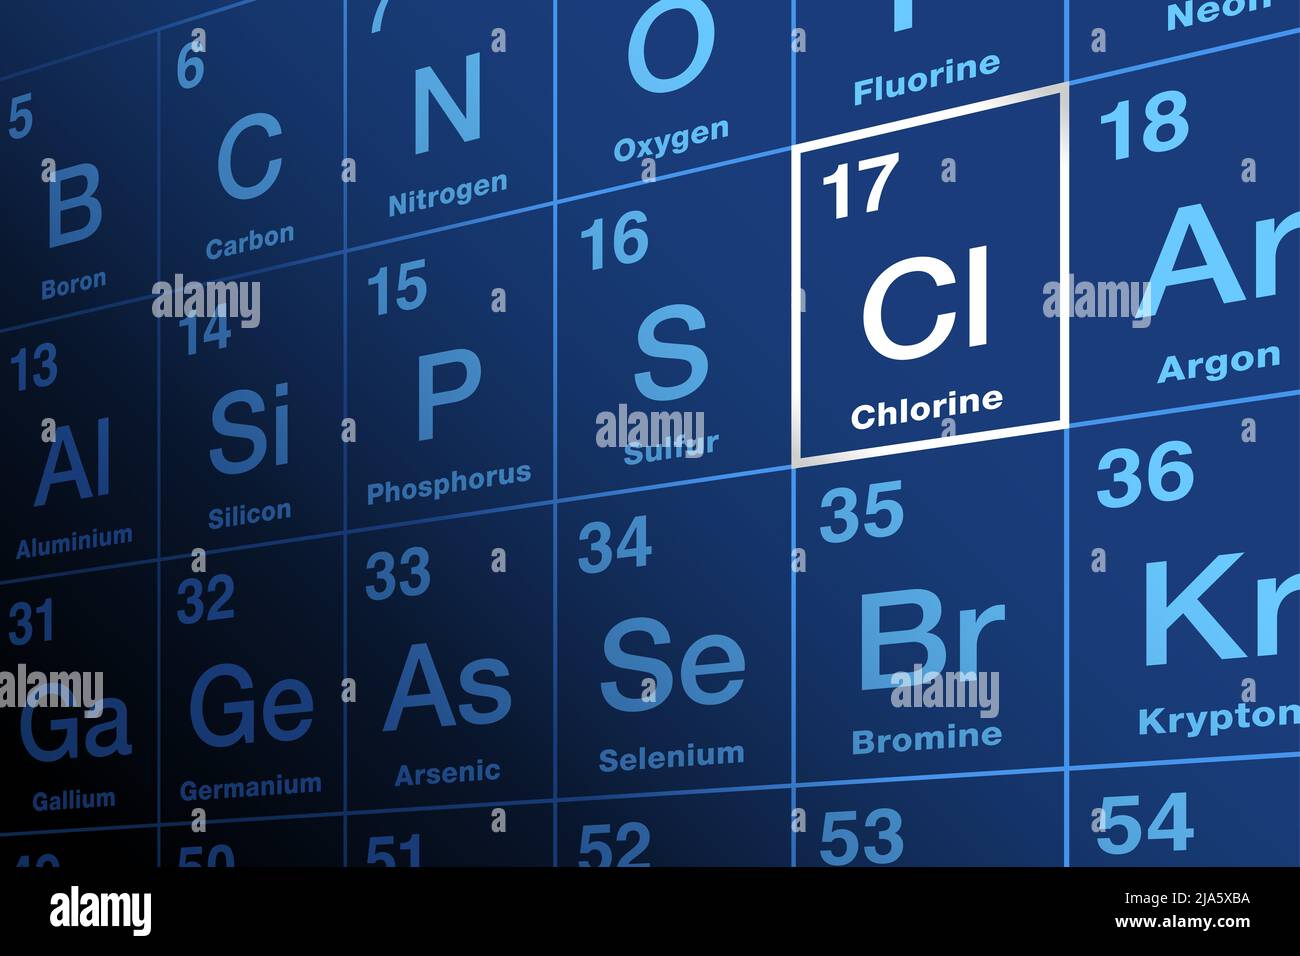 Cloro su tavola periodica degli elementi. Elemento chimico e alogeno con simbolo Cl e numero atomico 17. Foto Stock